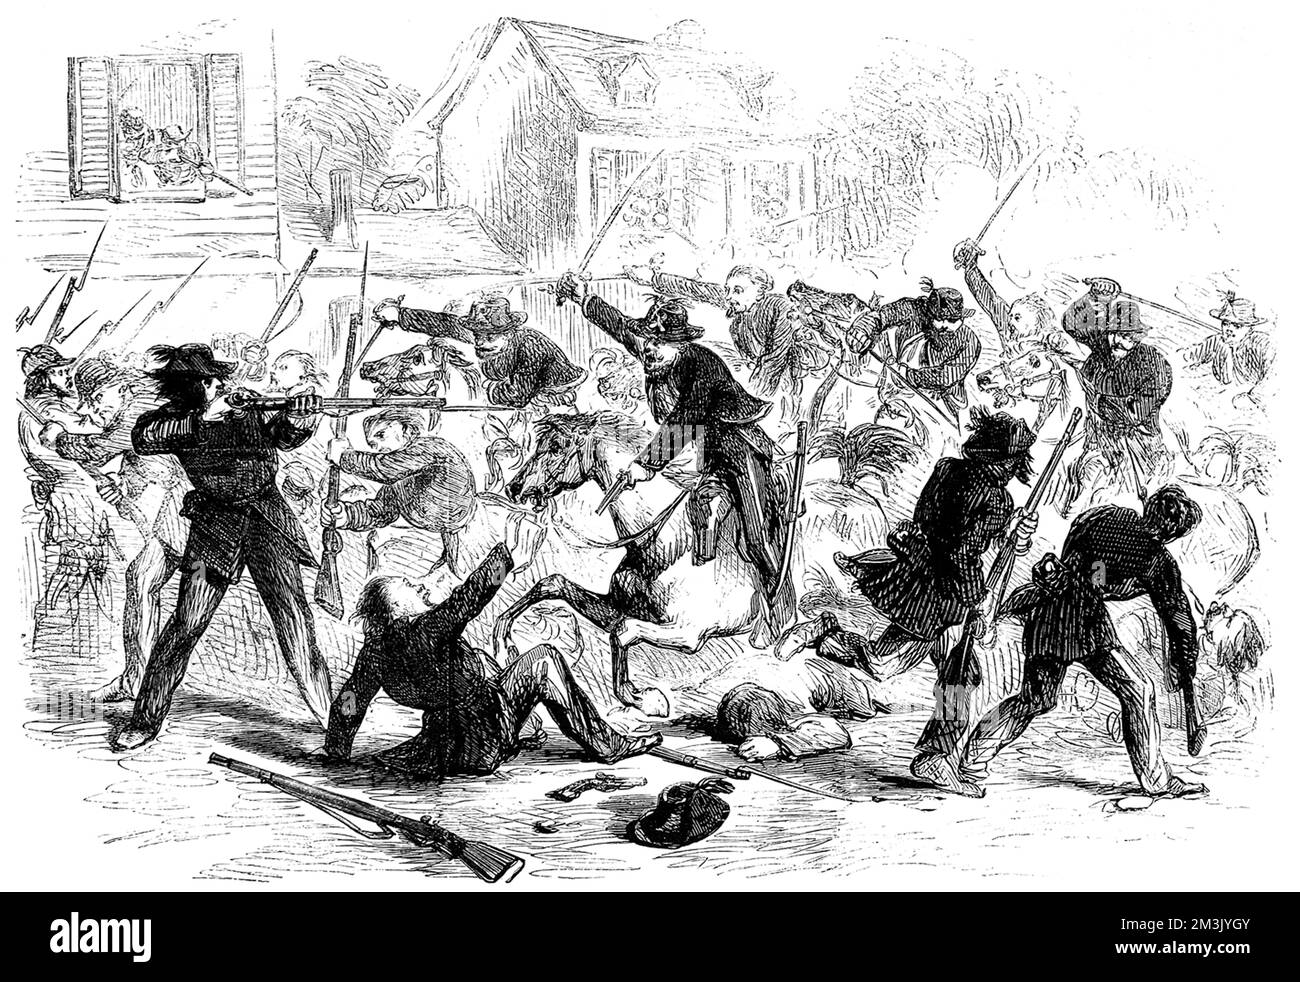 Le truppe federali (unioniste) si accerchiano a Fairfax per liberare due prigionieri federali che stanno per essere impiccati dai confederati, il 31st maggio 1861. Data: 1861 Foto Stock